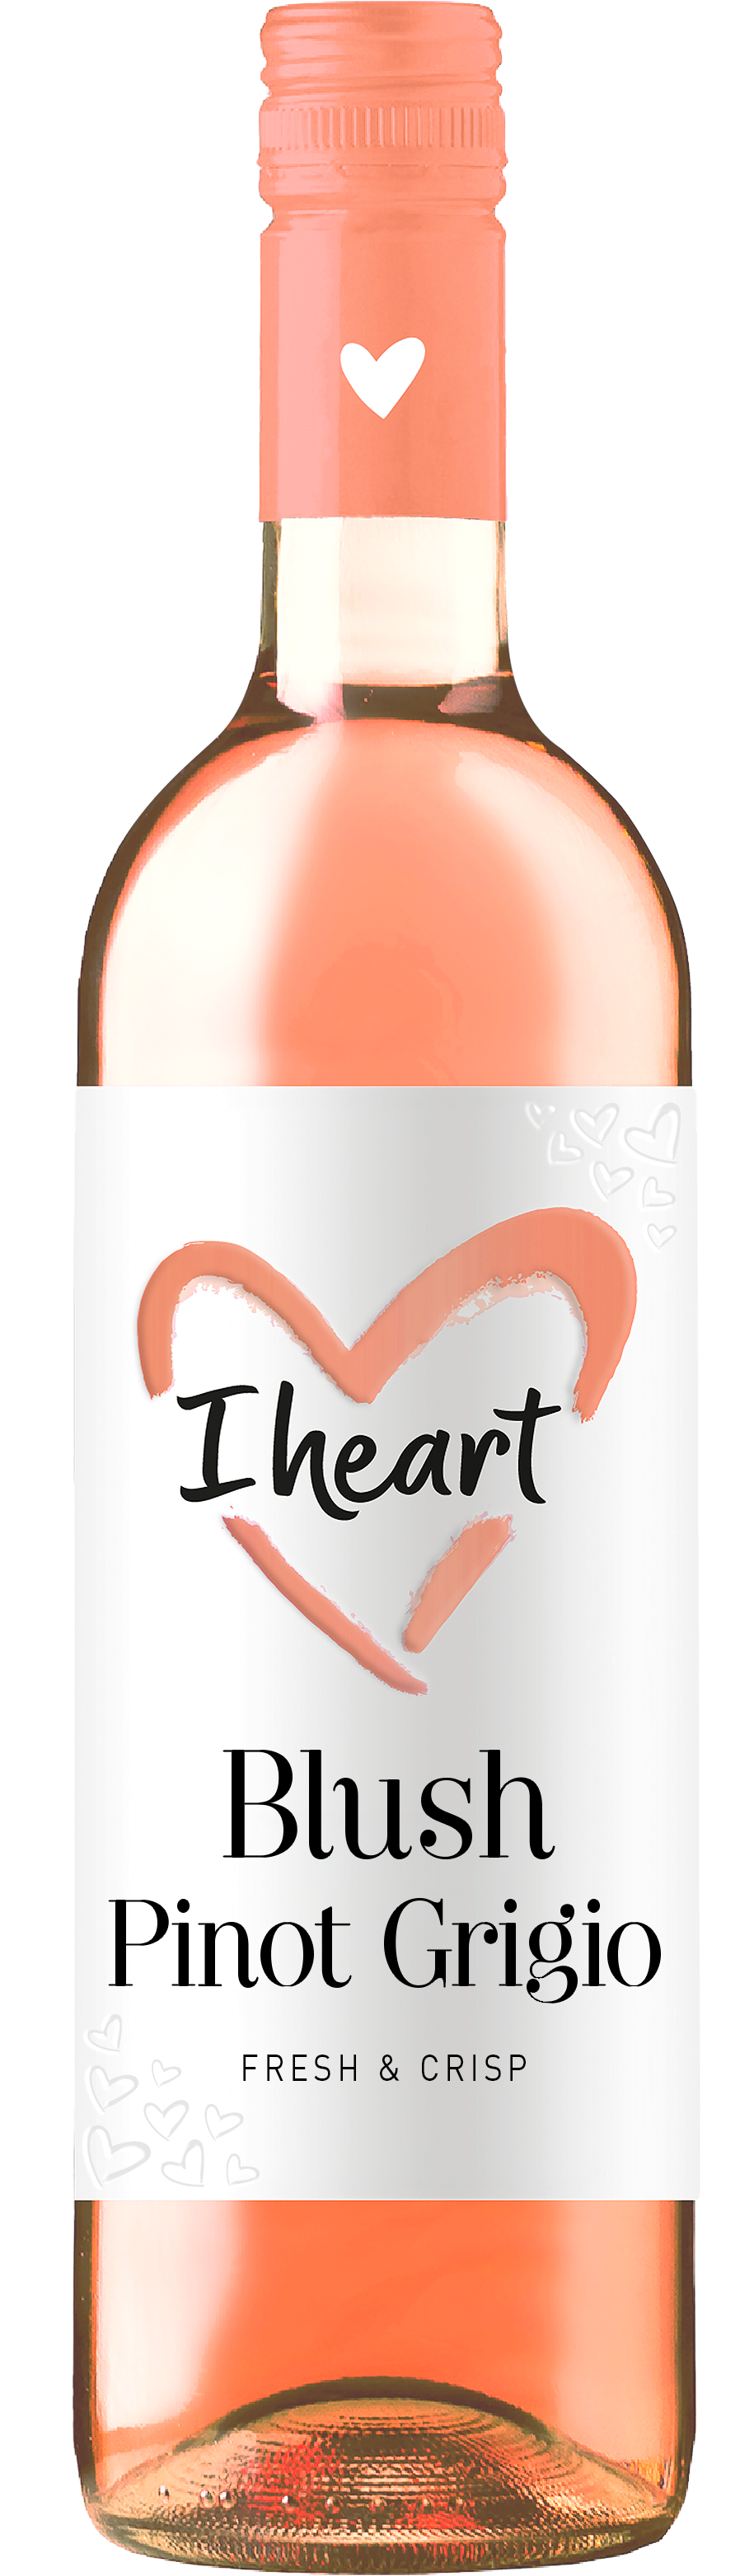 I heart Sauvignon Blanc - I heart wines